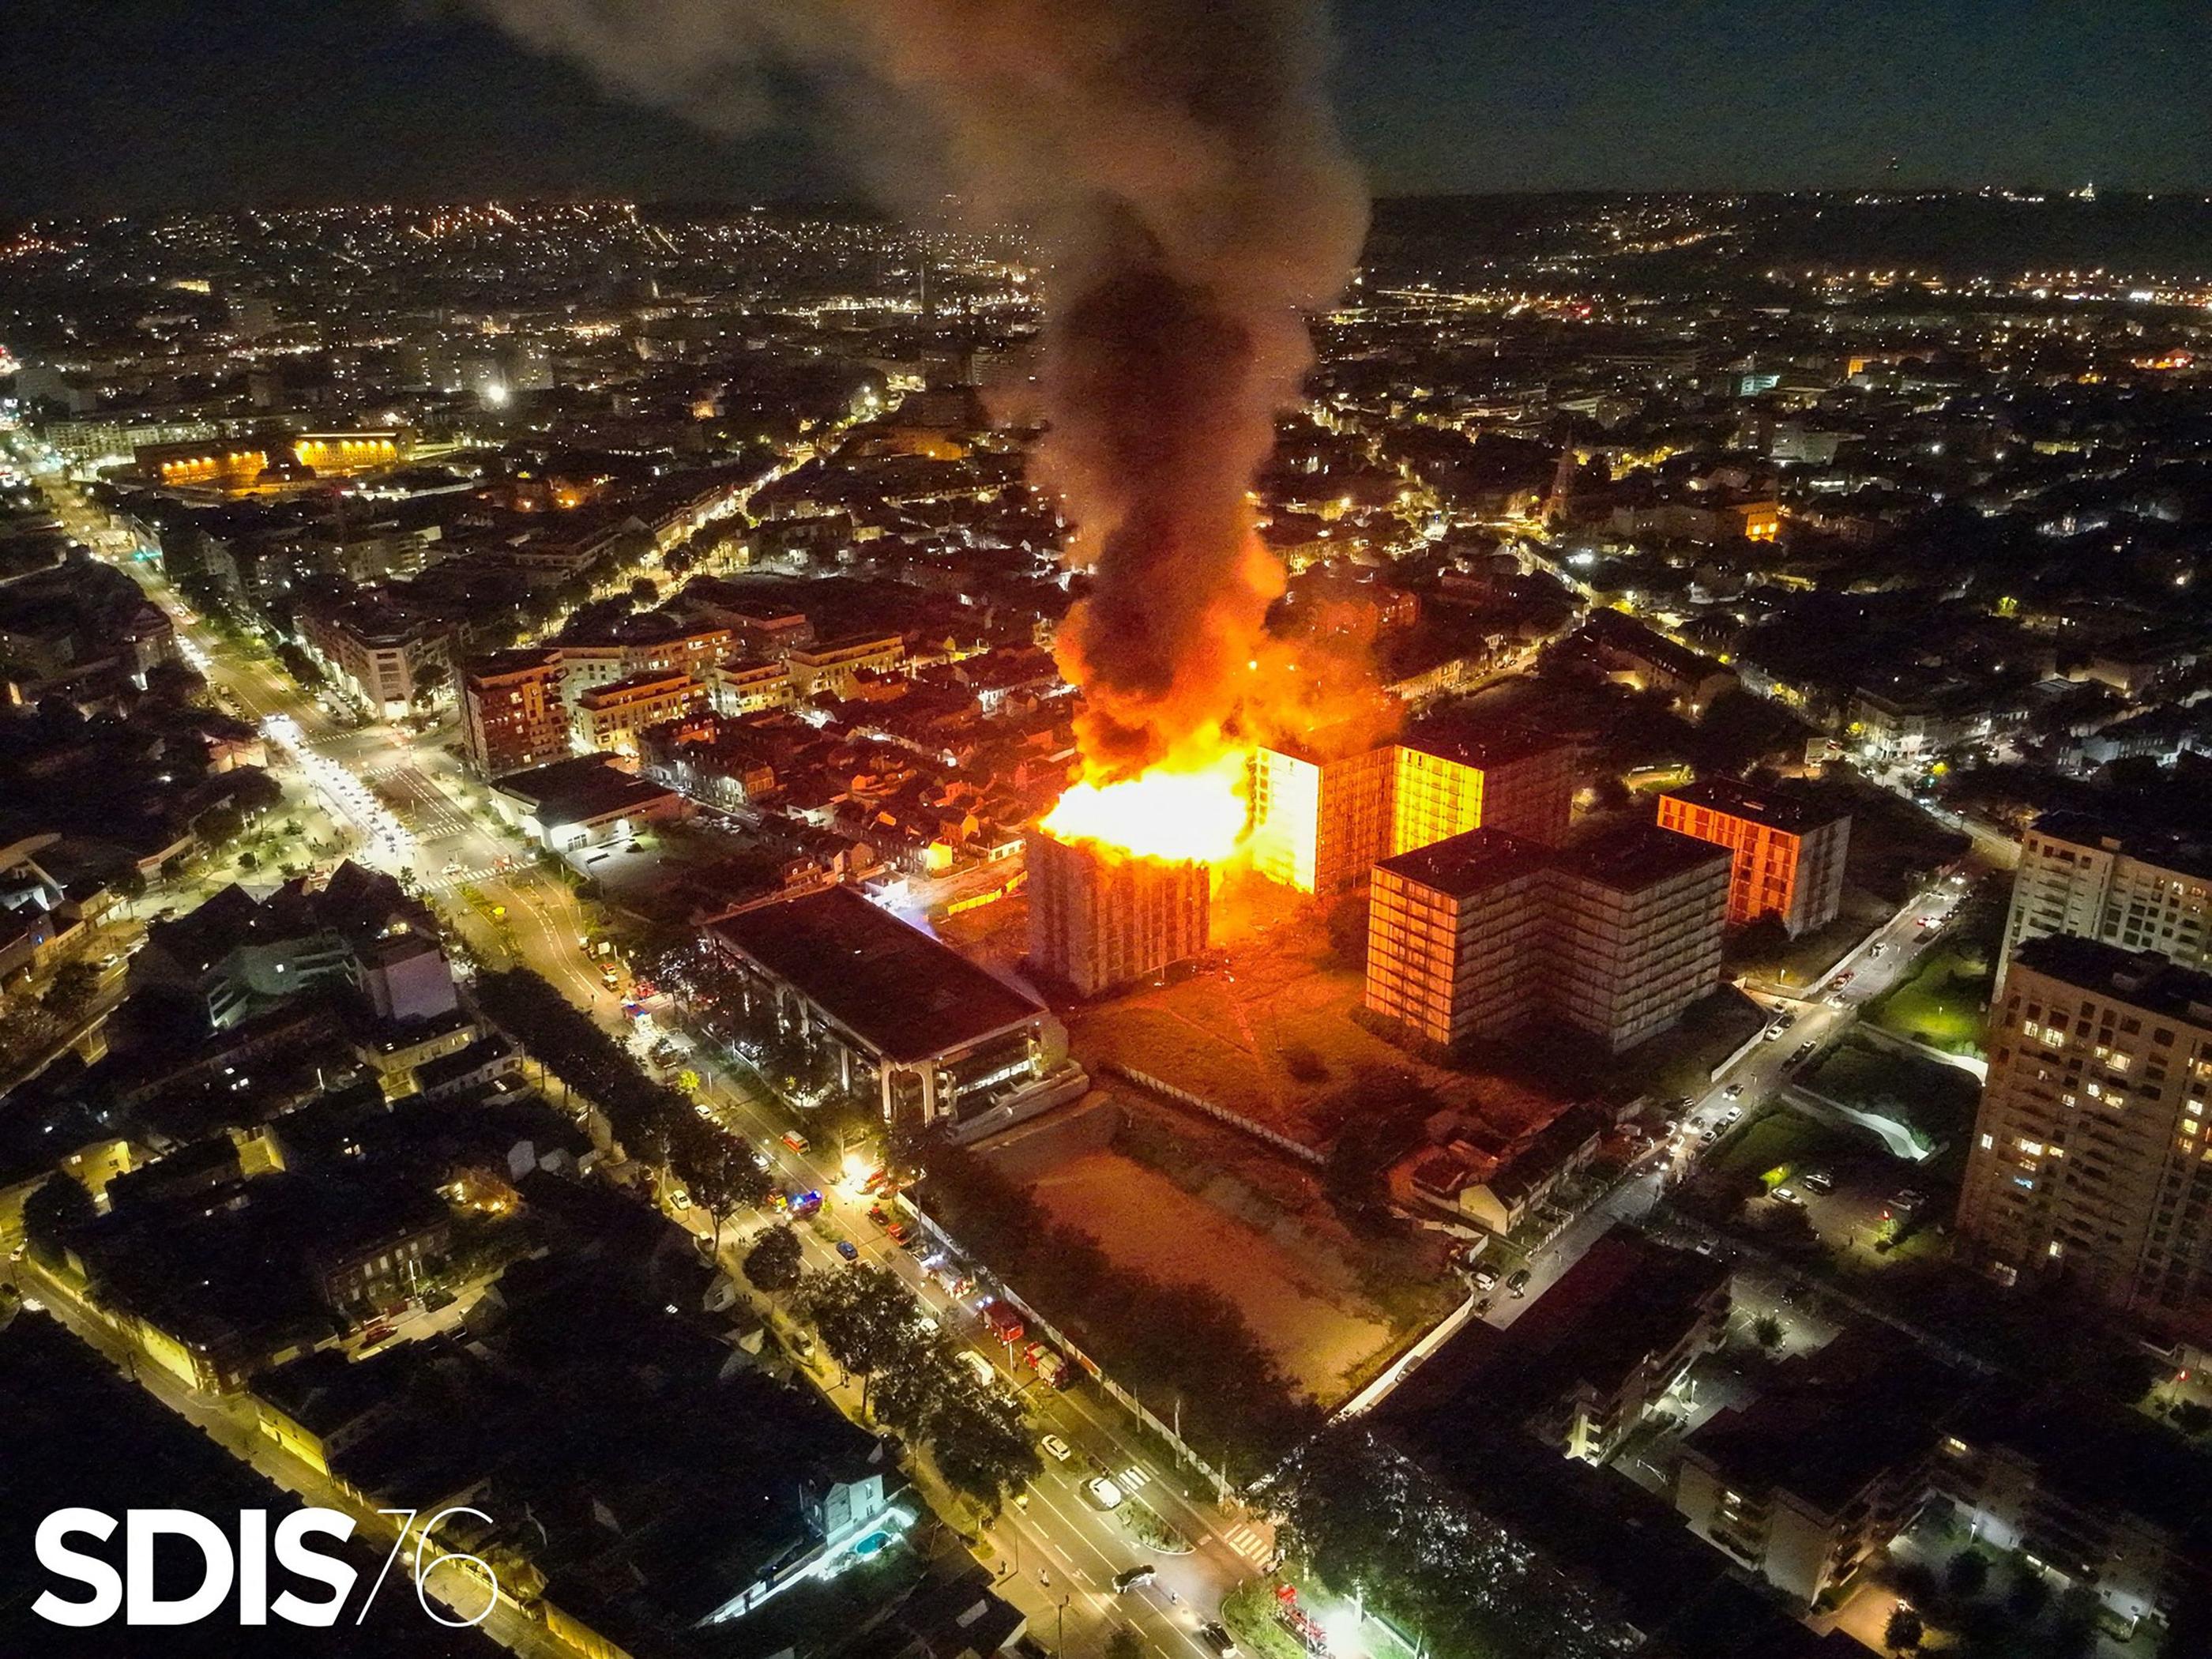 Un incendie avait ravagé il y a une semaine, sans faire de victime, deux immeubles désaffectés des années 1970 à Rouen. SDIS76 / AFP